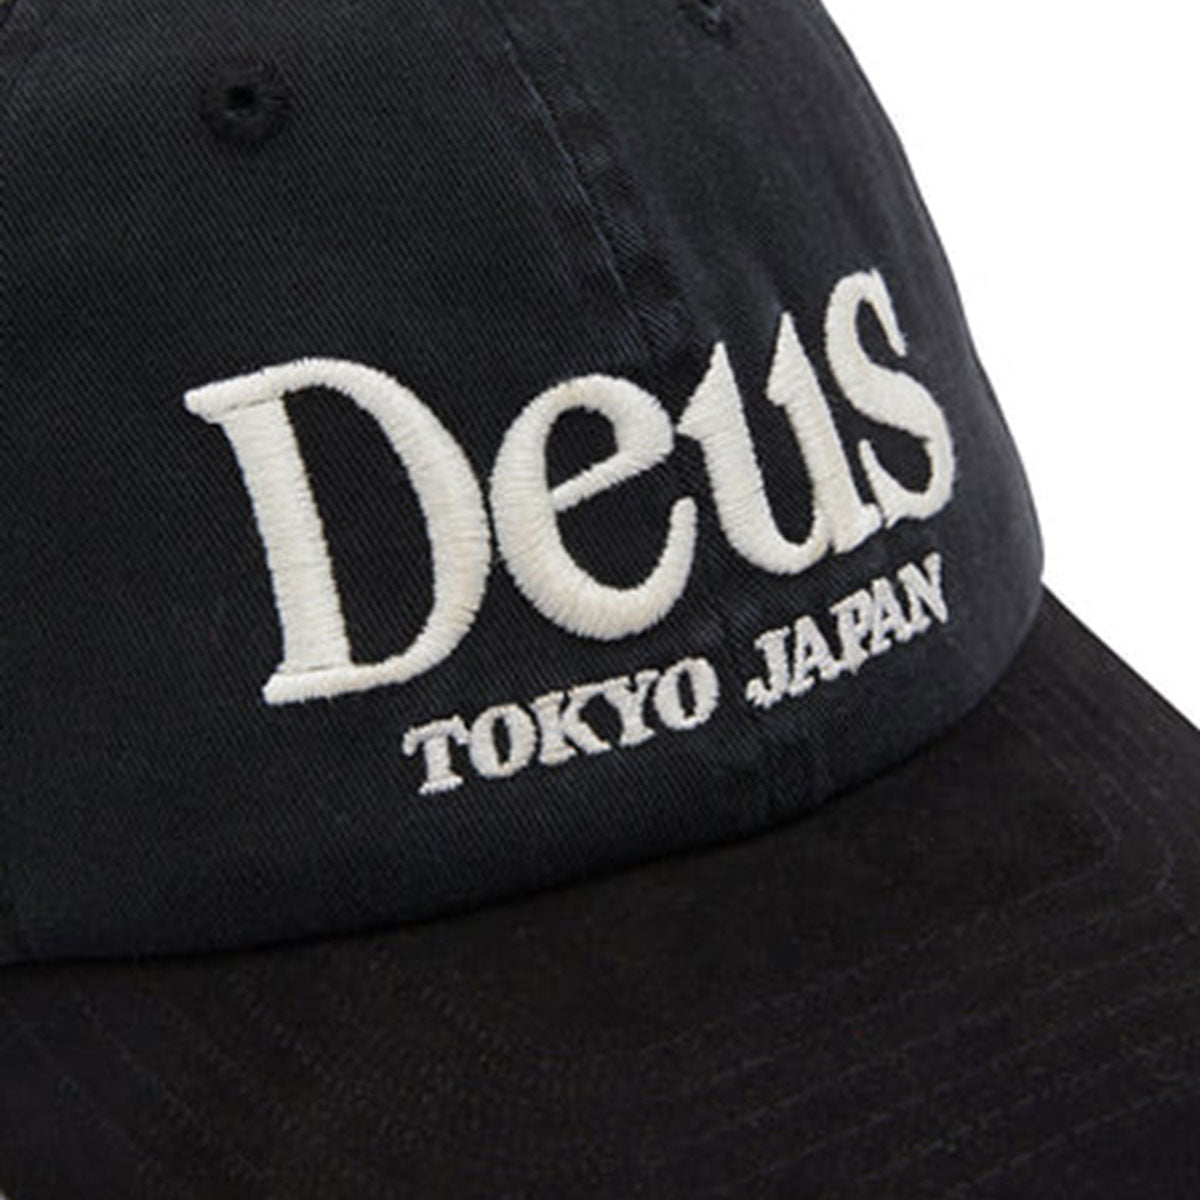 DEUS EX MACHINA - METRO DAD CAP BLACK【DMP247265】